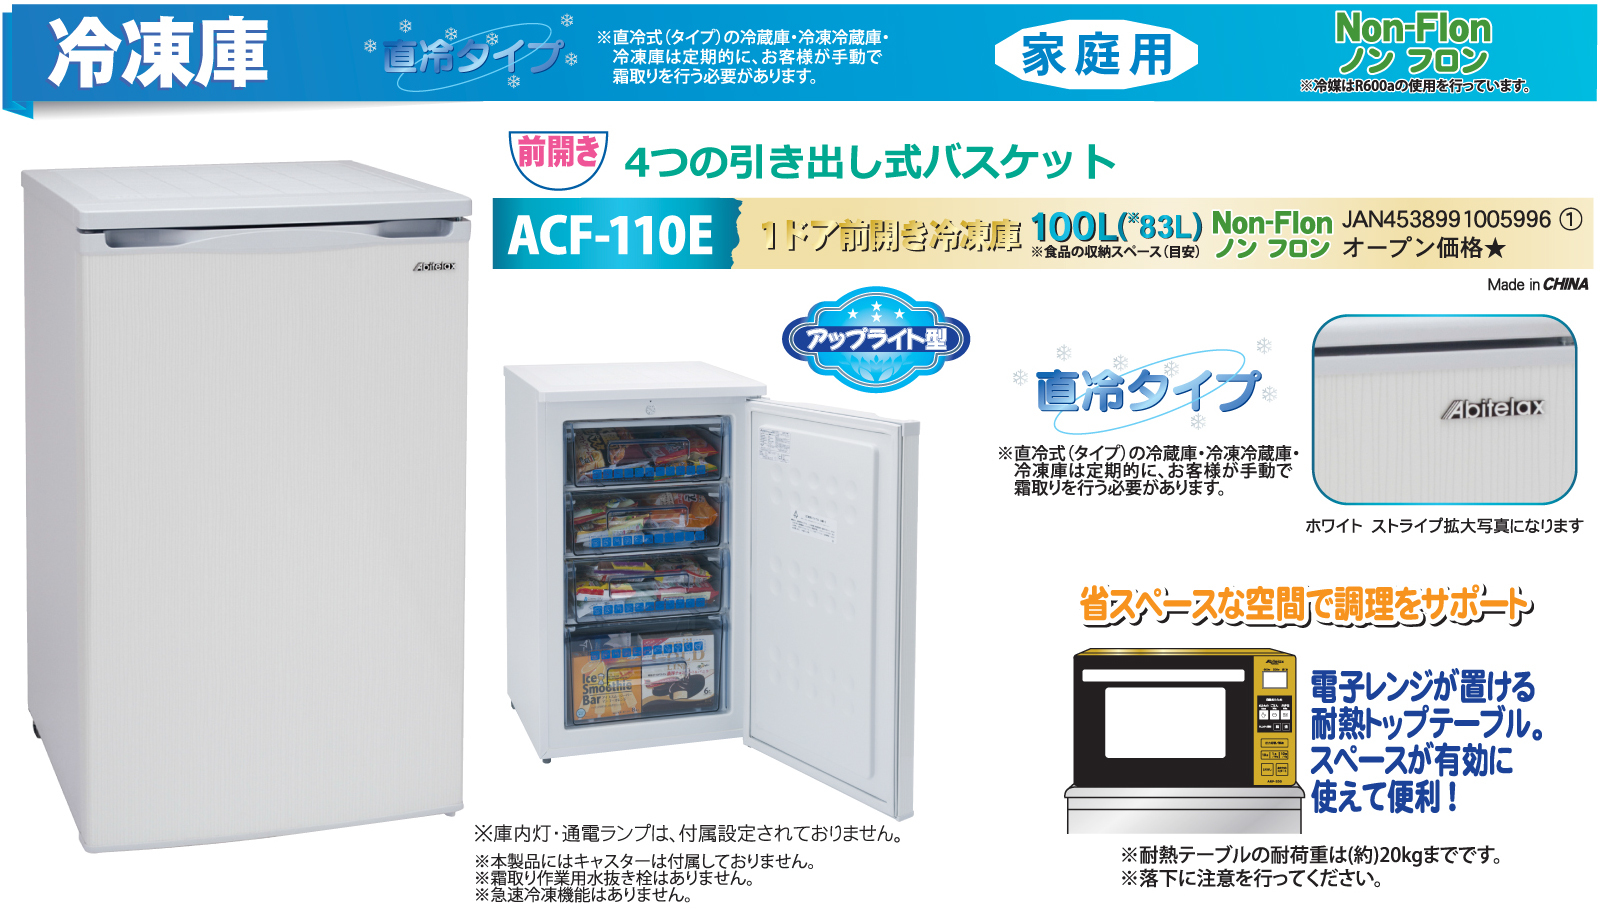 21 小型家庭用冷凍庫の人気おすすめ15選 電気代や使い勝手を比較紹介 暮らし の